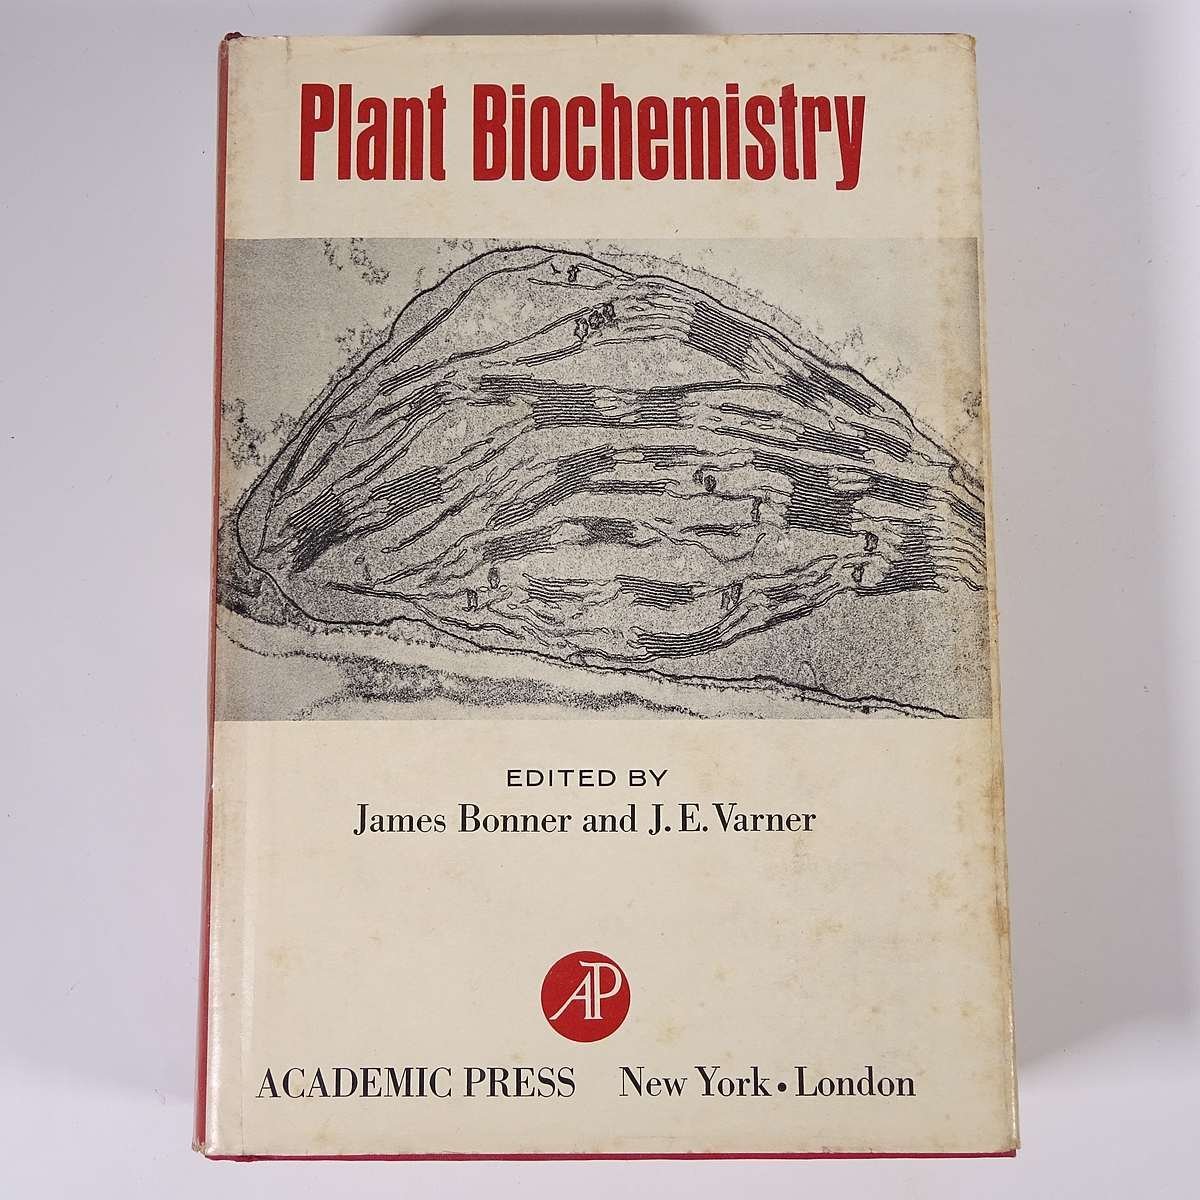 【英語洋書】 Plant Biochemistry 植物生化学 James Bonner ジェームズ・ボナーほか 1967 単行本 生物学 化学 植物学_画像1